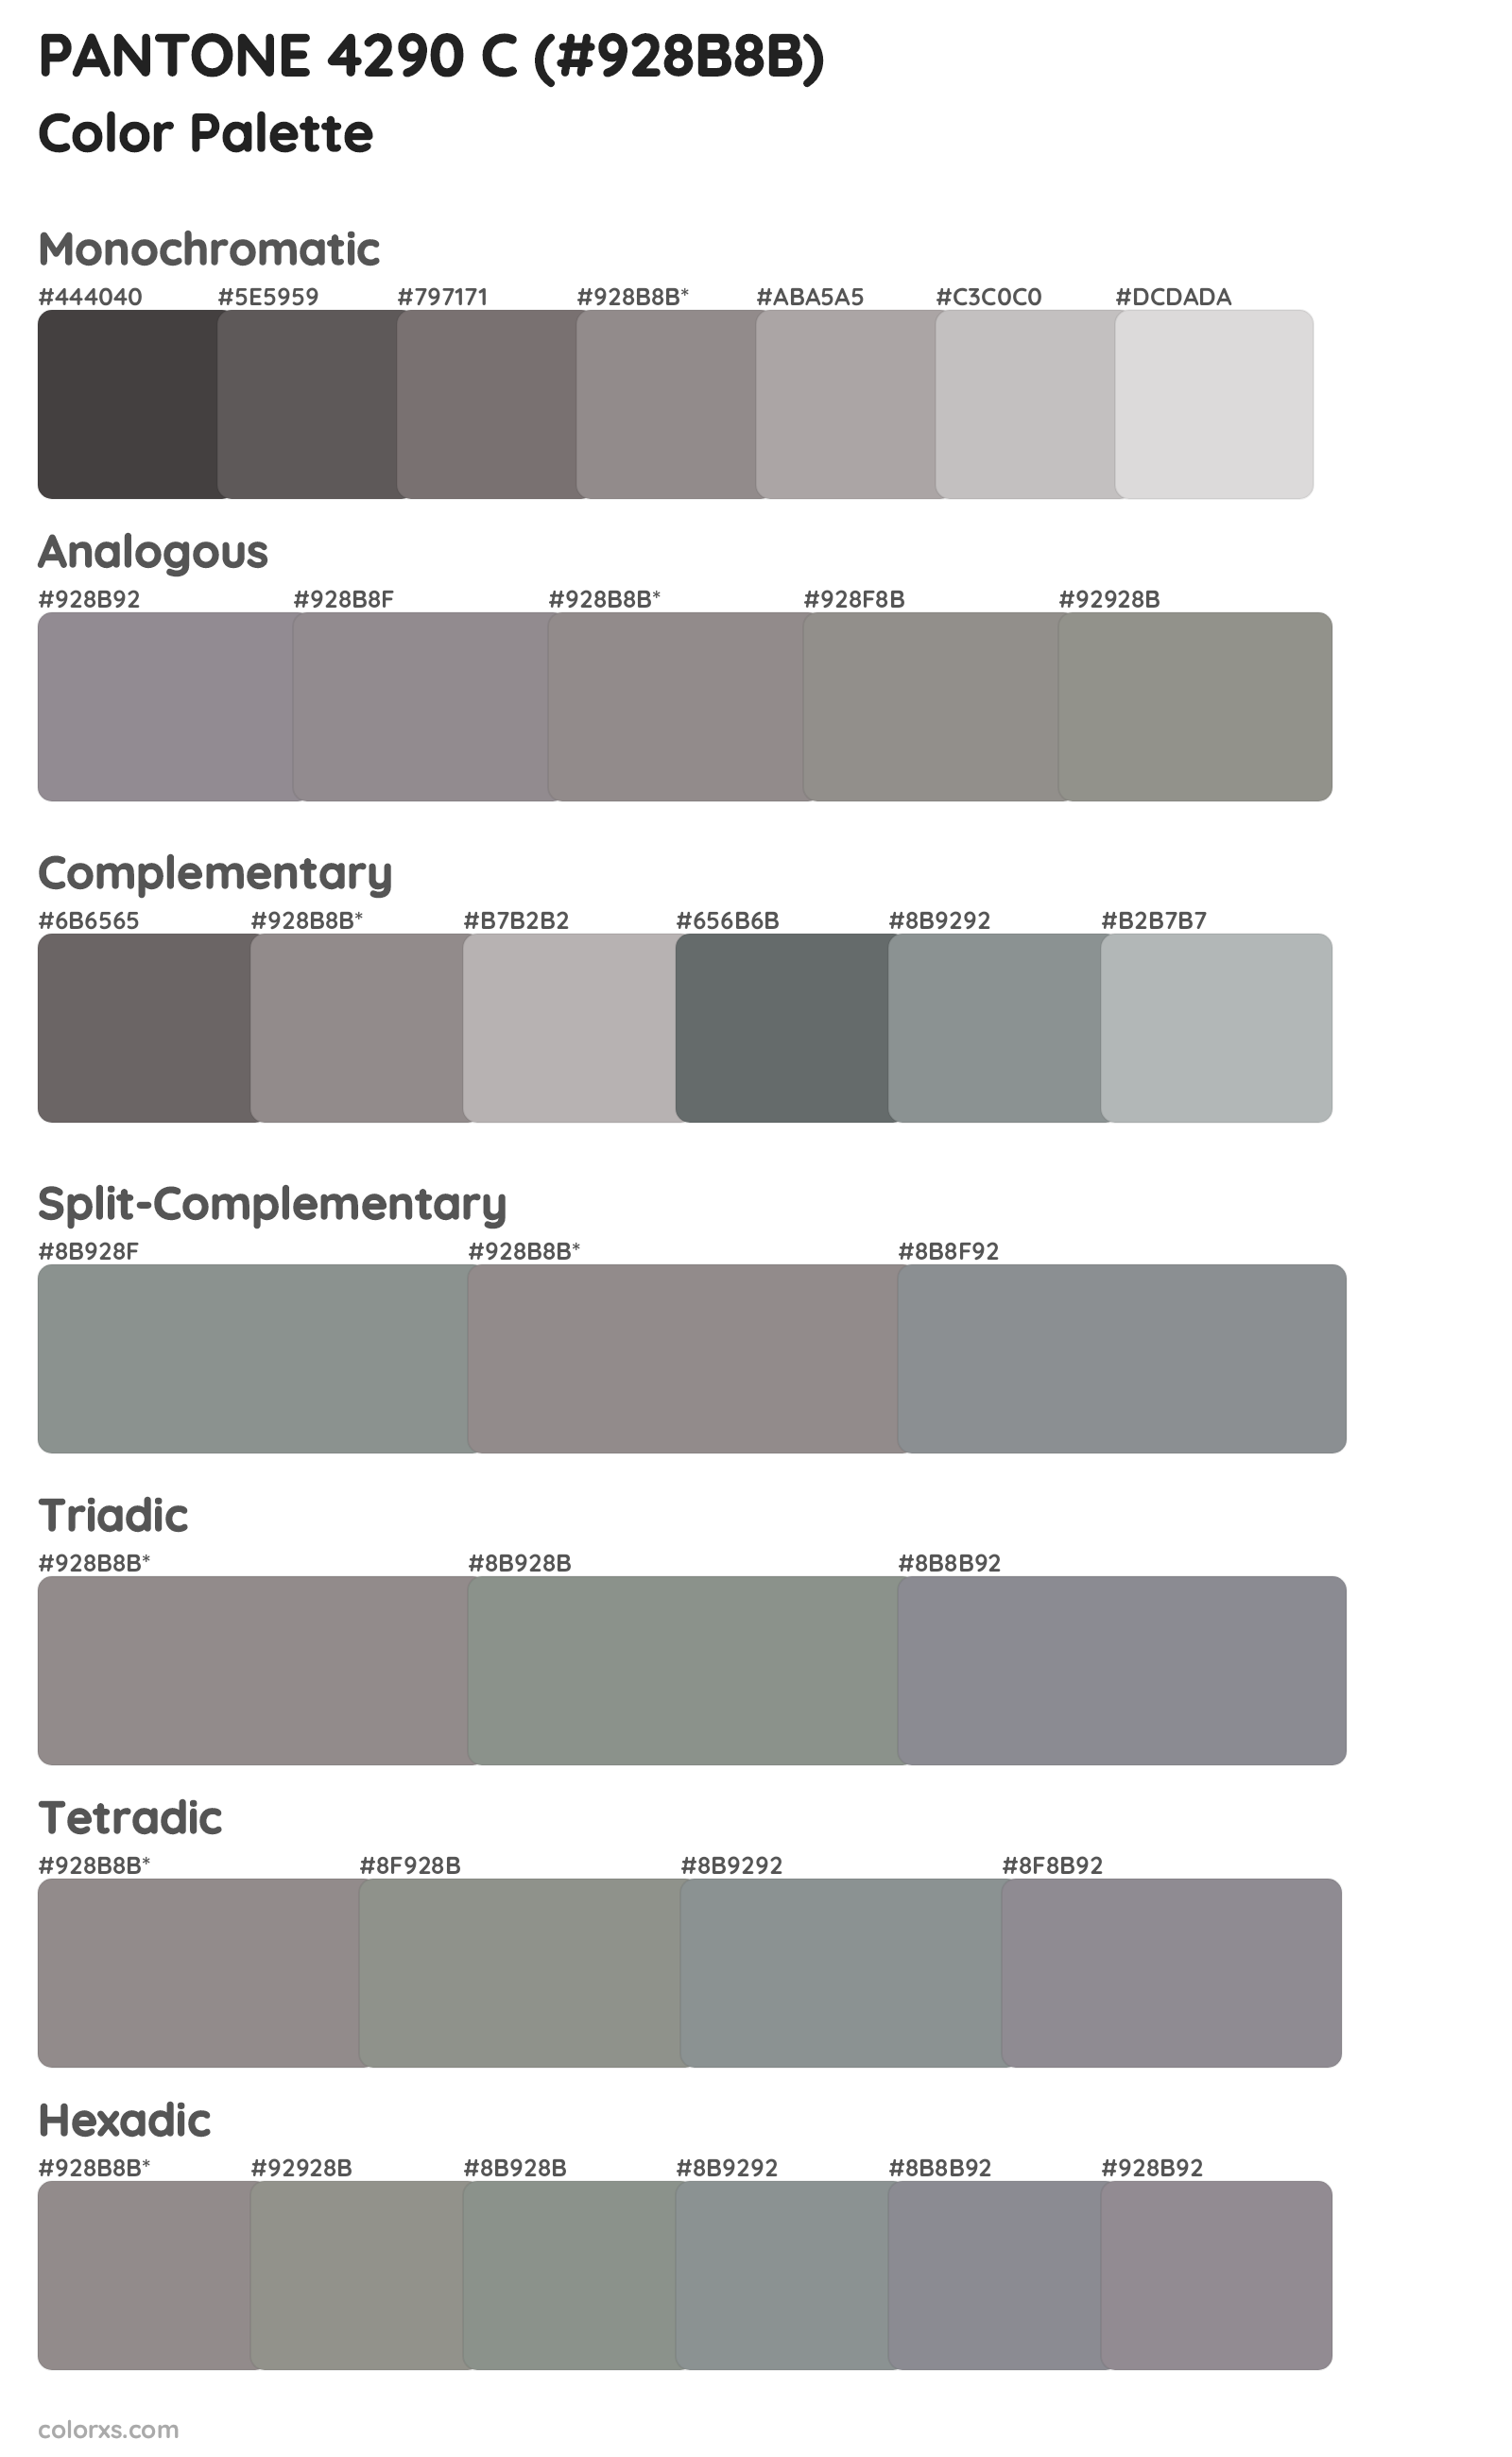 PANTONE 4290 C Color Scheme Palettes